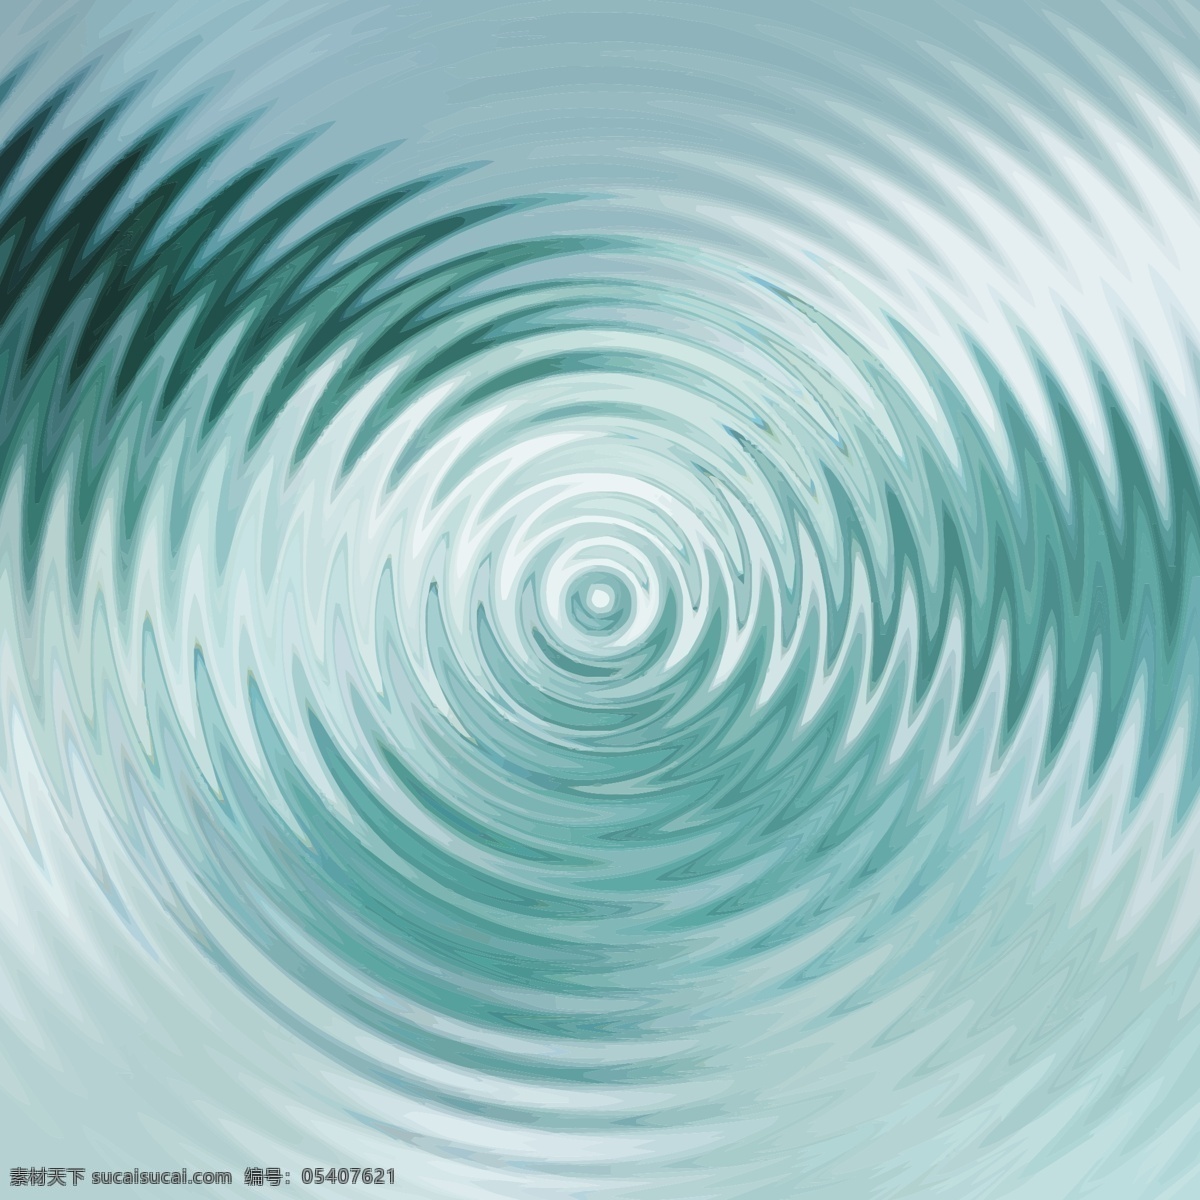 样品 中 背景 抽象背景 抽象 水 波浪 色彩 壁纸 色彩背景 水彩 抽象波浪 波浪背景